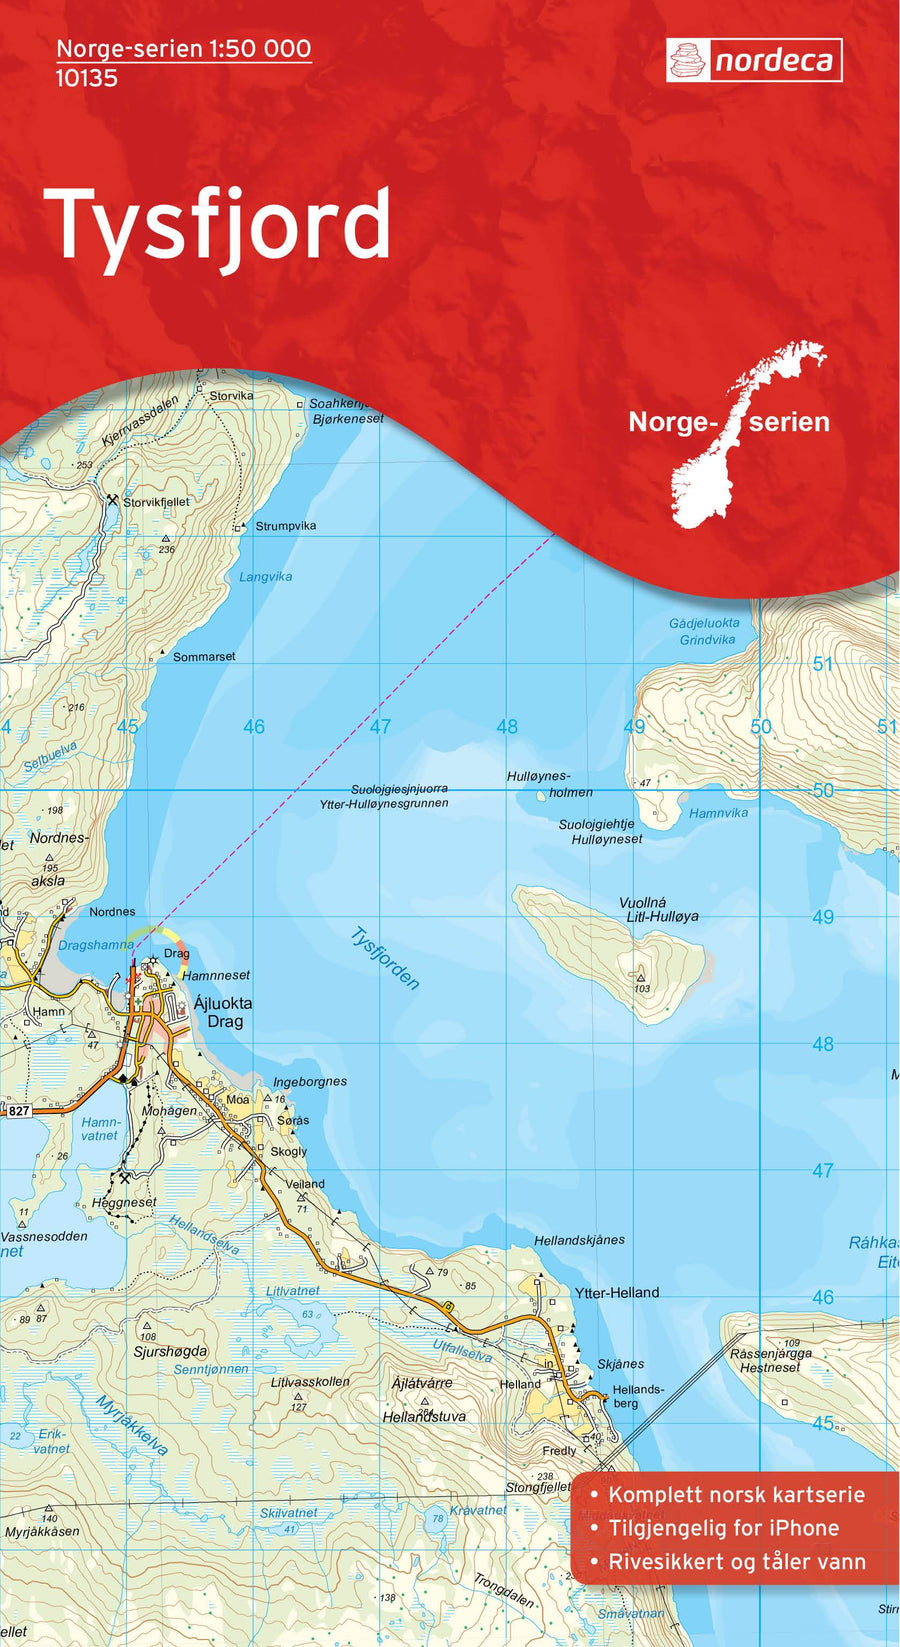 Carte de randonnée n° 10135 - Tysfjord (Norvège) | Nordeca - Norge-serien carte pliée Nordeca 